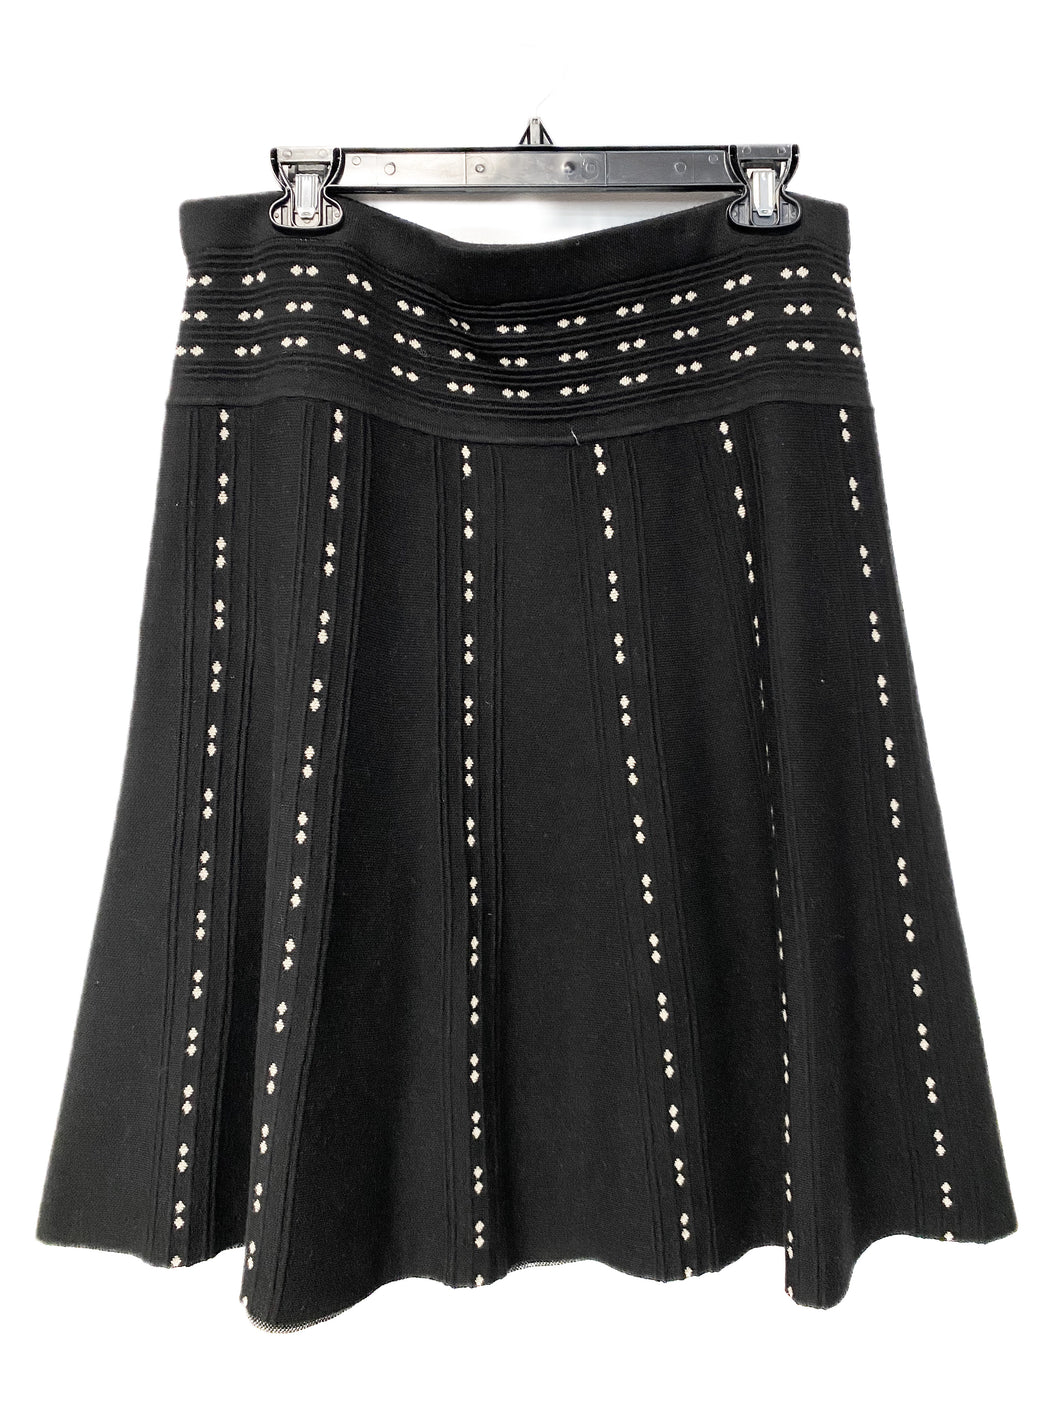 Max Studio Skirt (L)